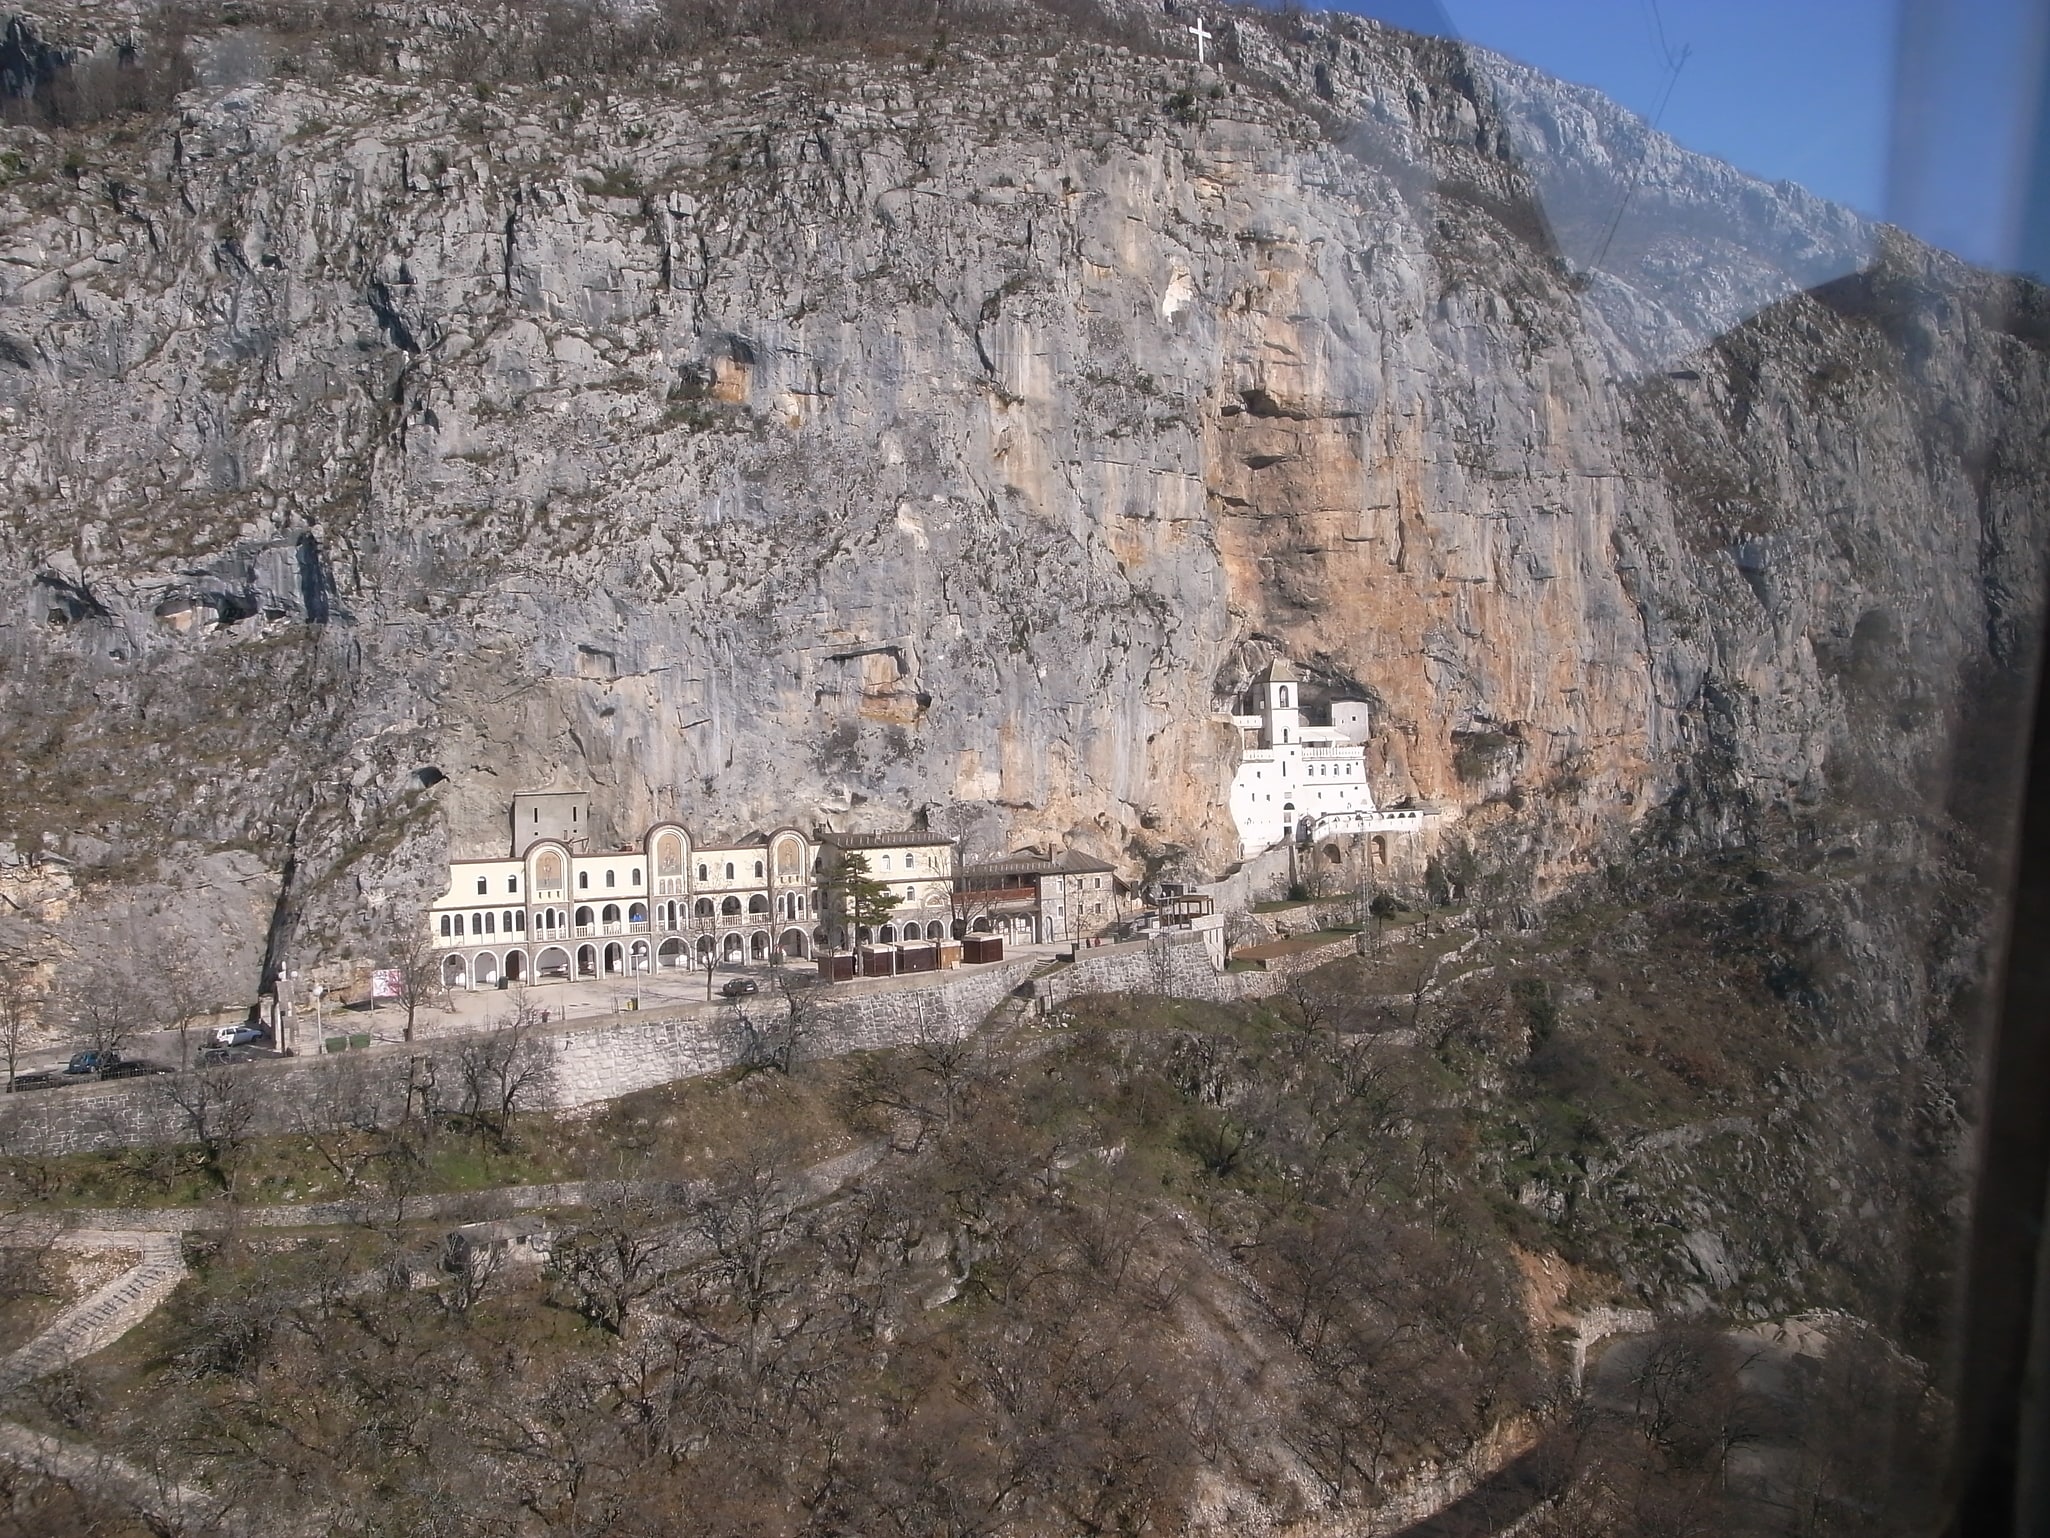 Monasterio de Ostrog, Montenegro